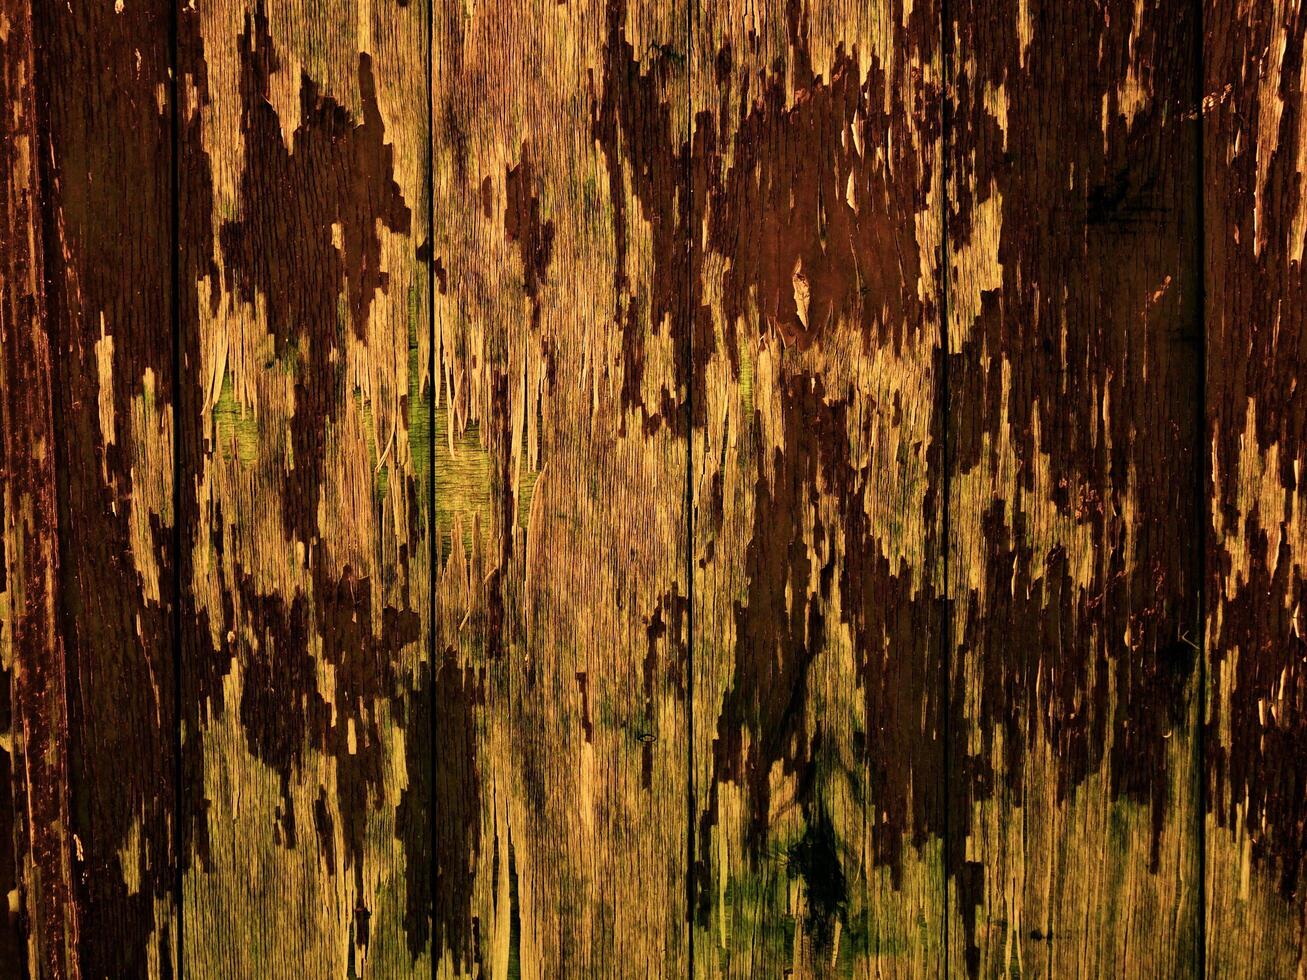 textura de madera marrón oscuro foto